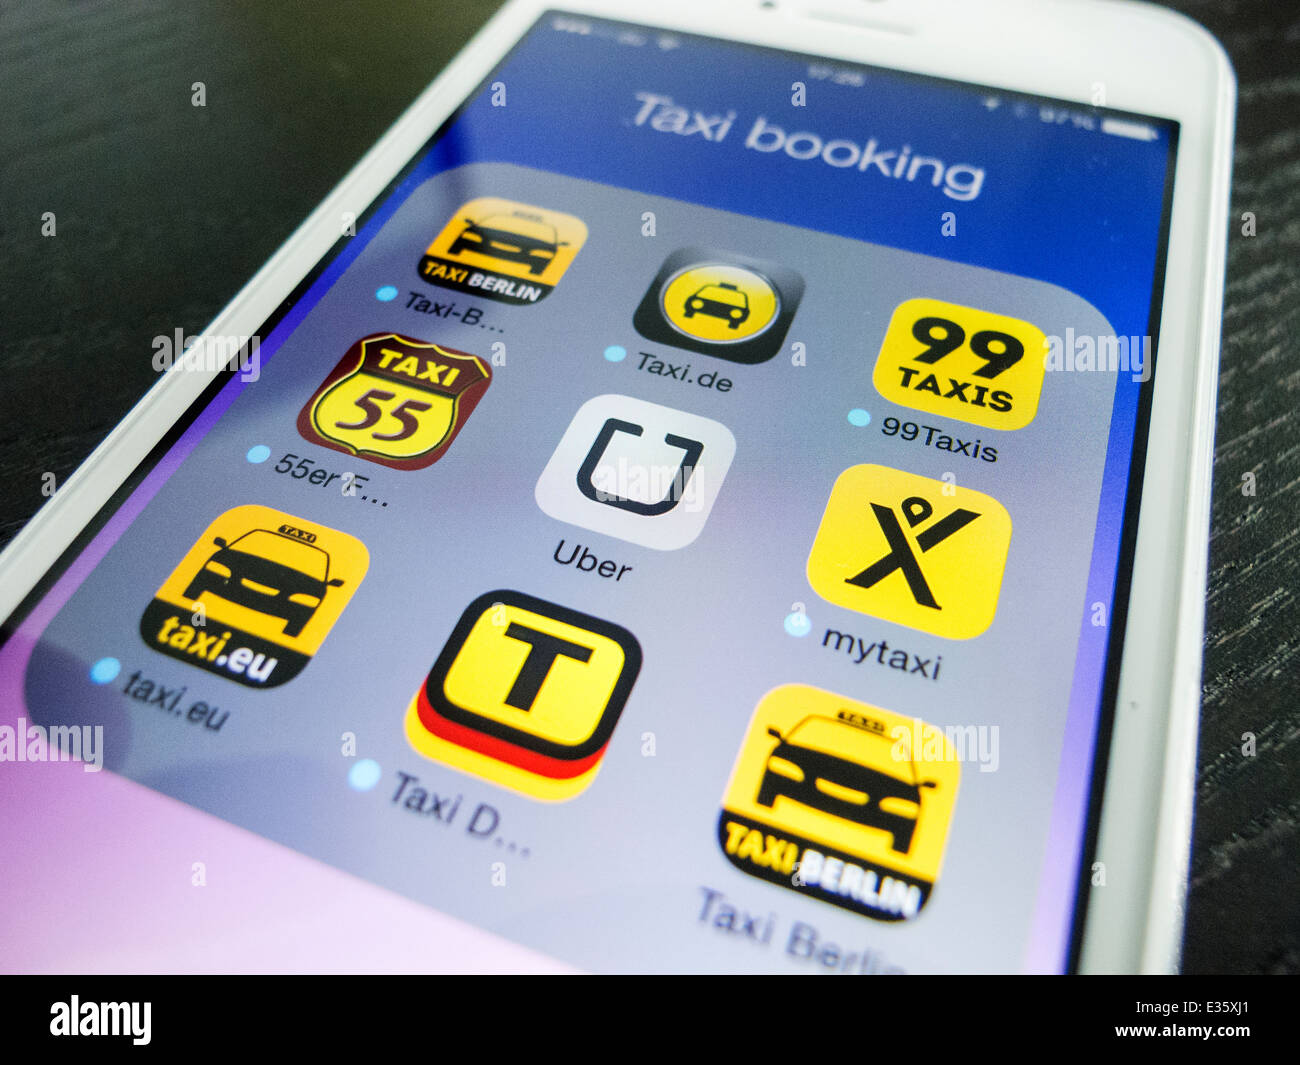 Détail de l'écran de l'iPhone avec de nombreuses applications mobiles pour la réservation de taxis Banque D'Images